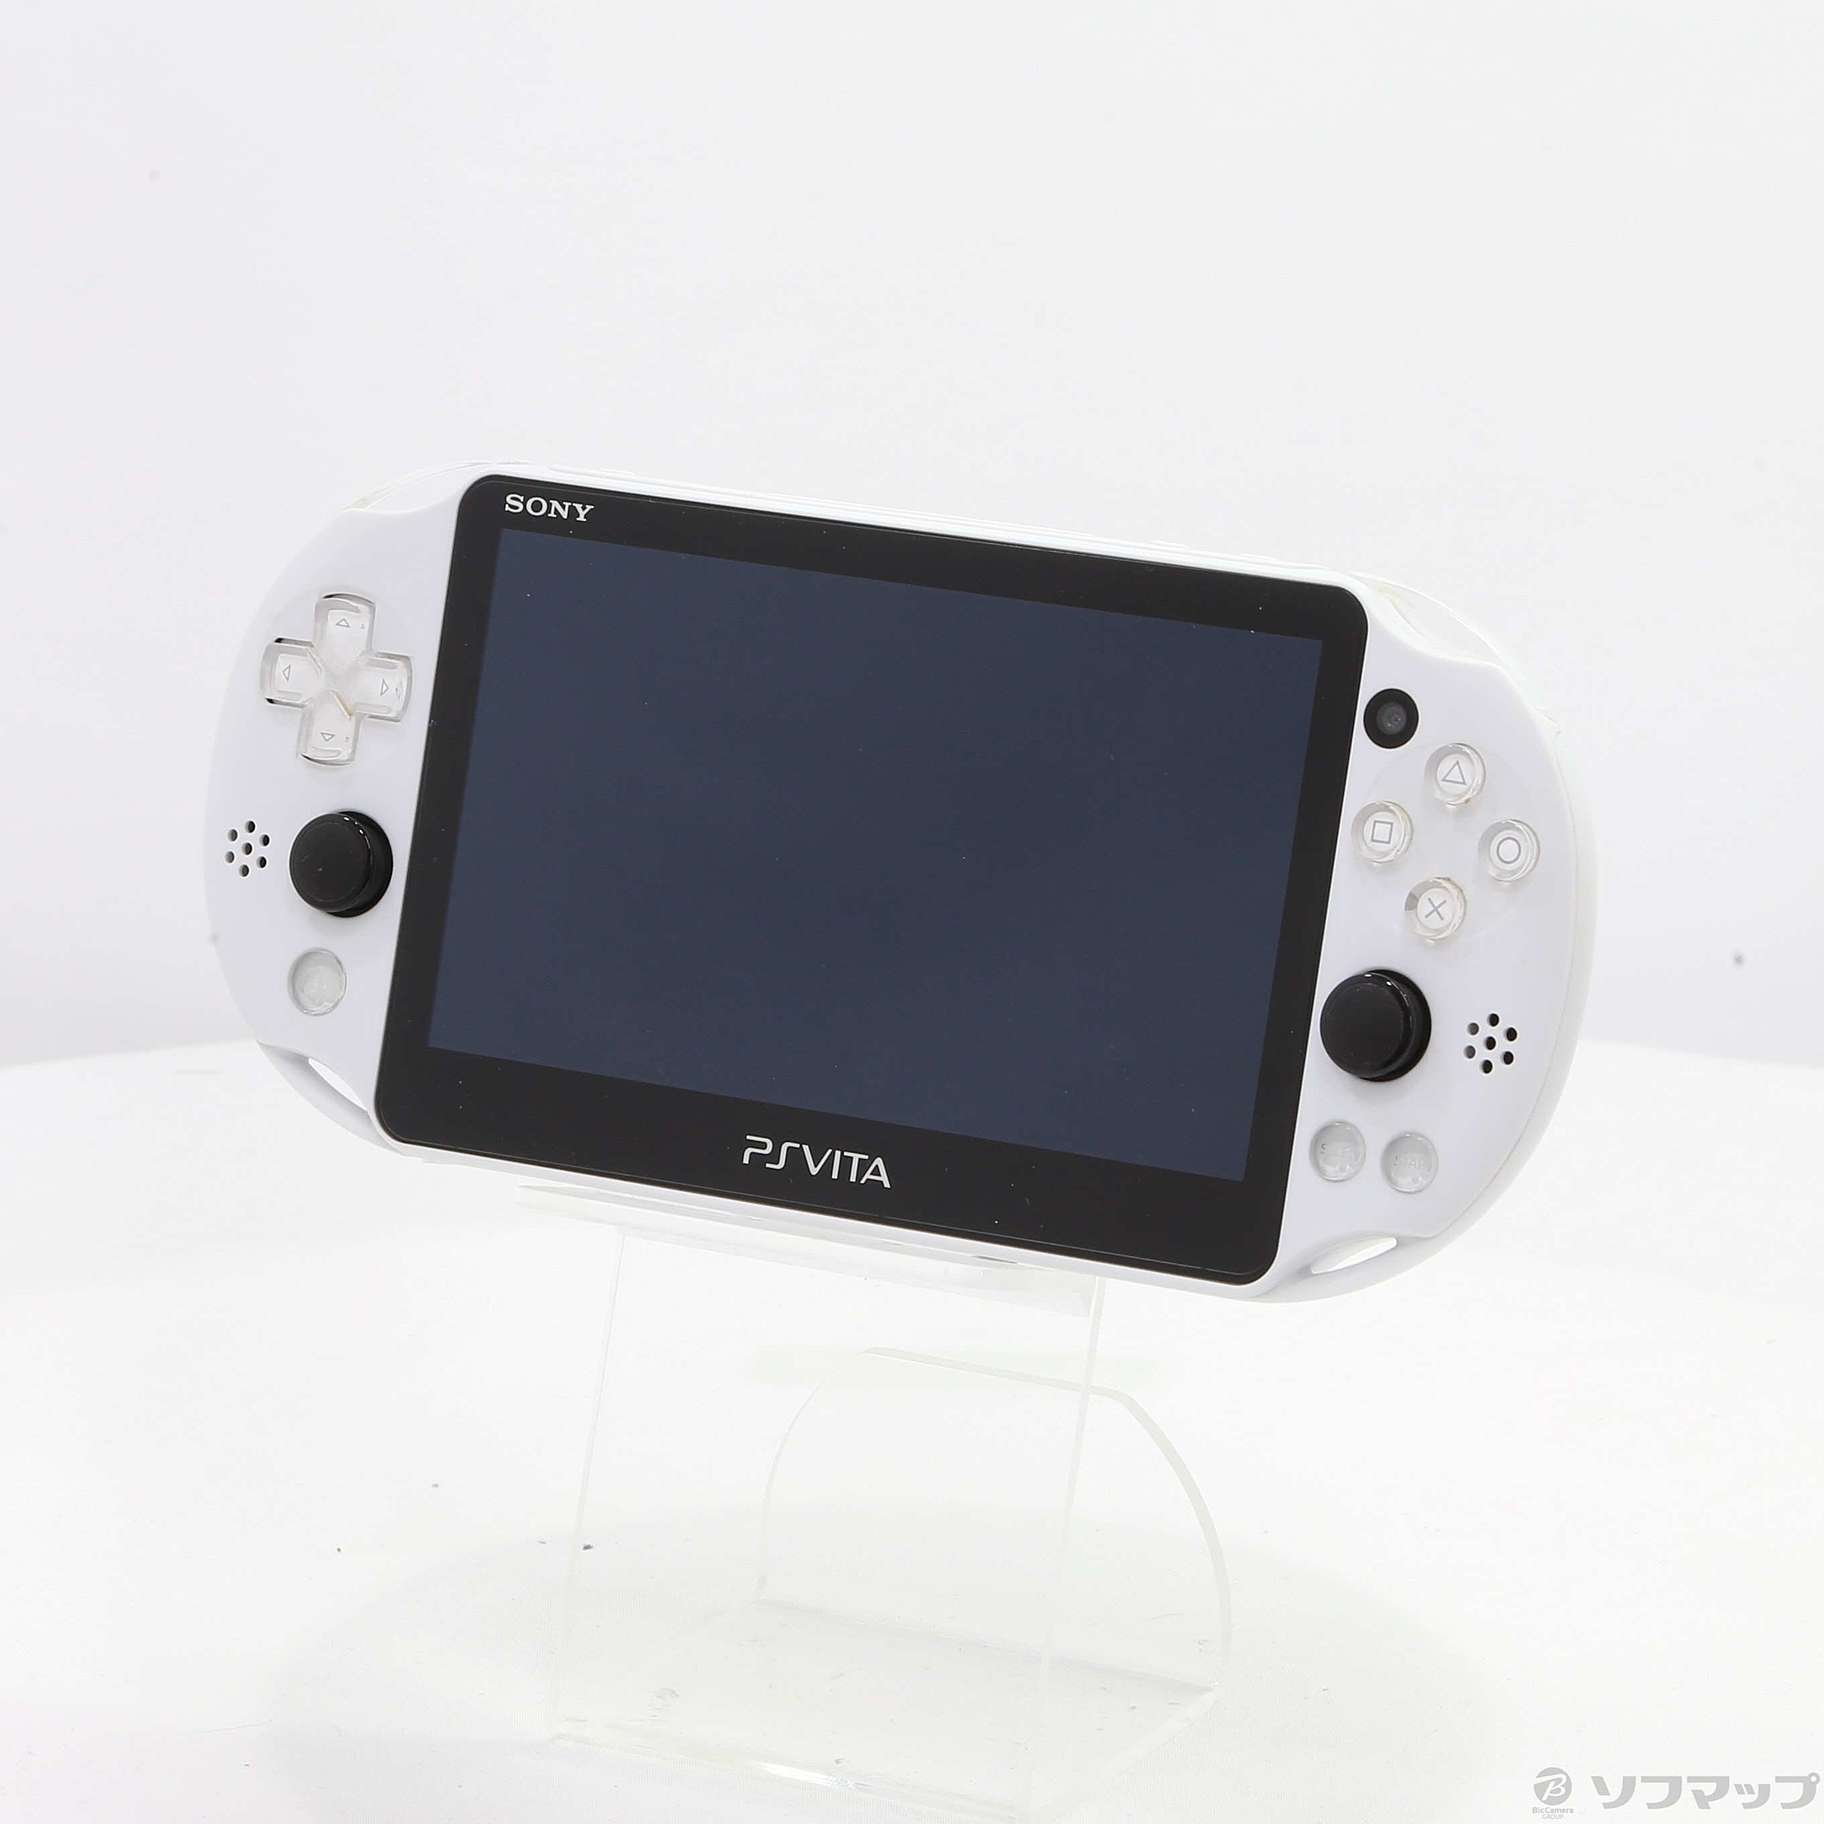 テレワーク関連 PlayStation 新品 グレイシャーホワイト PCH-2000 Vita 携帯用ゲーム本体